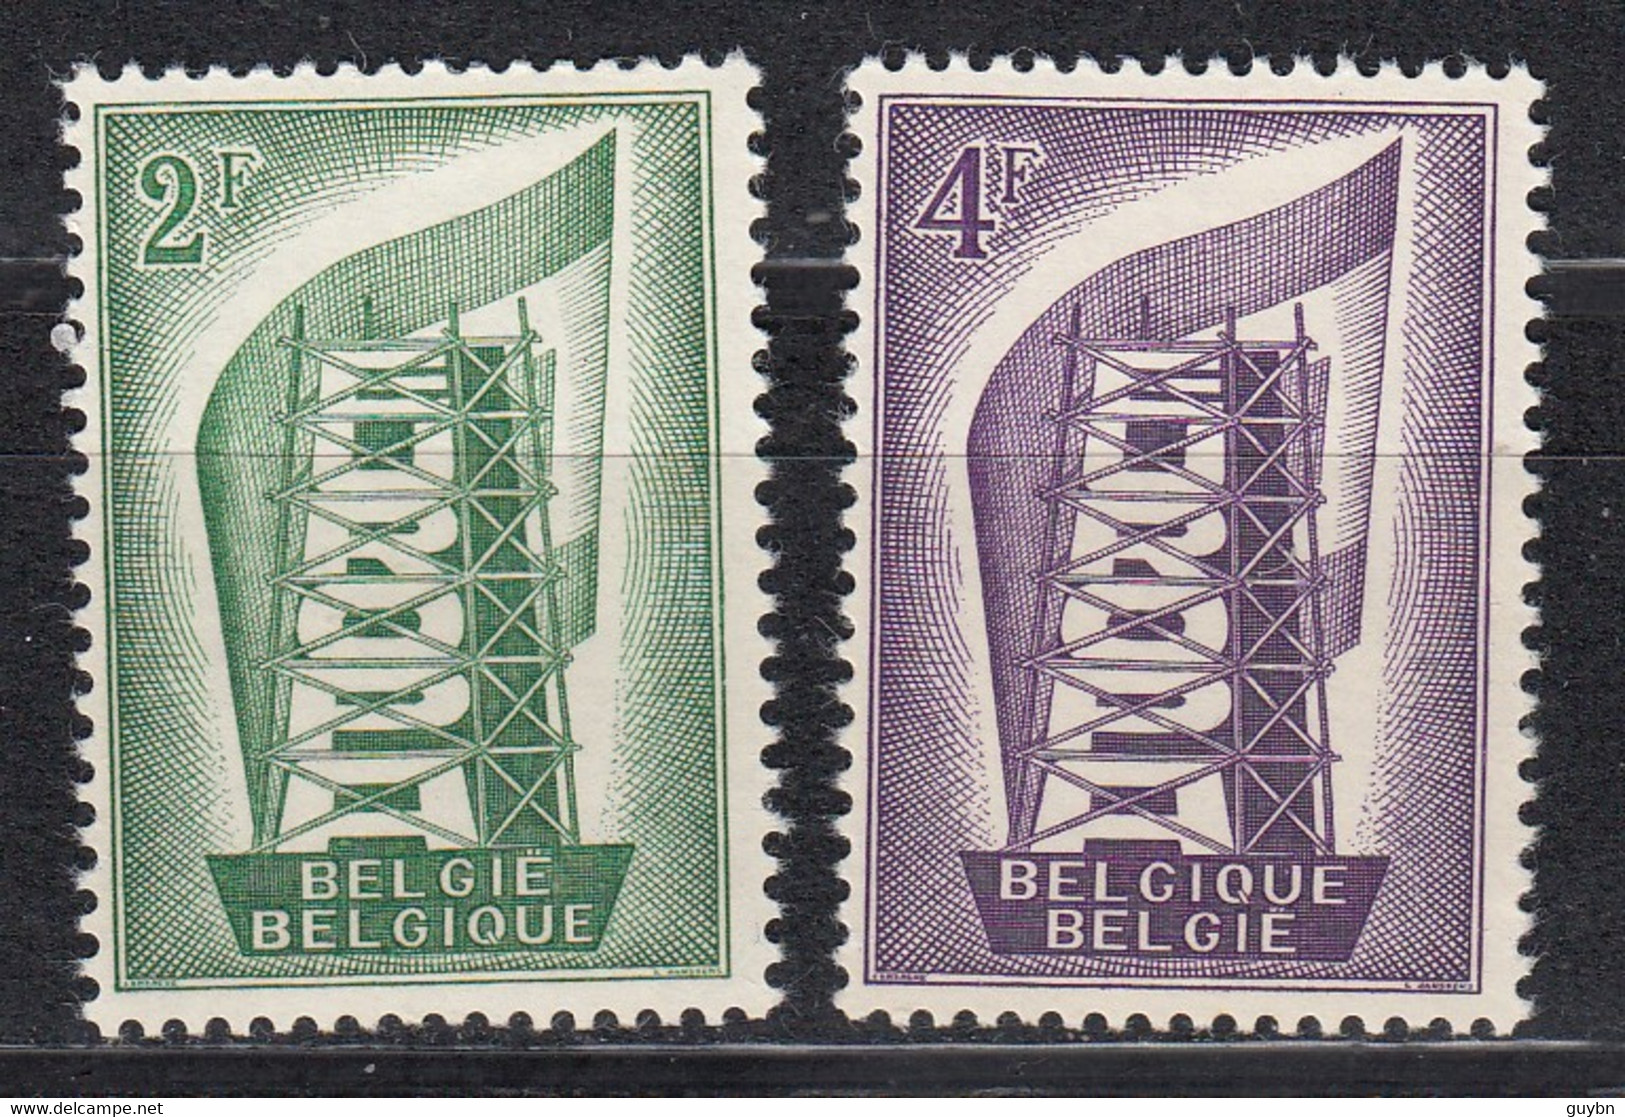 € Belgique 994 / 995 ** .. Europa CEPT 1956 ..  MNH .. Cote 15.00 € - 1956